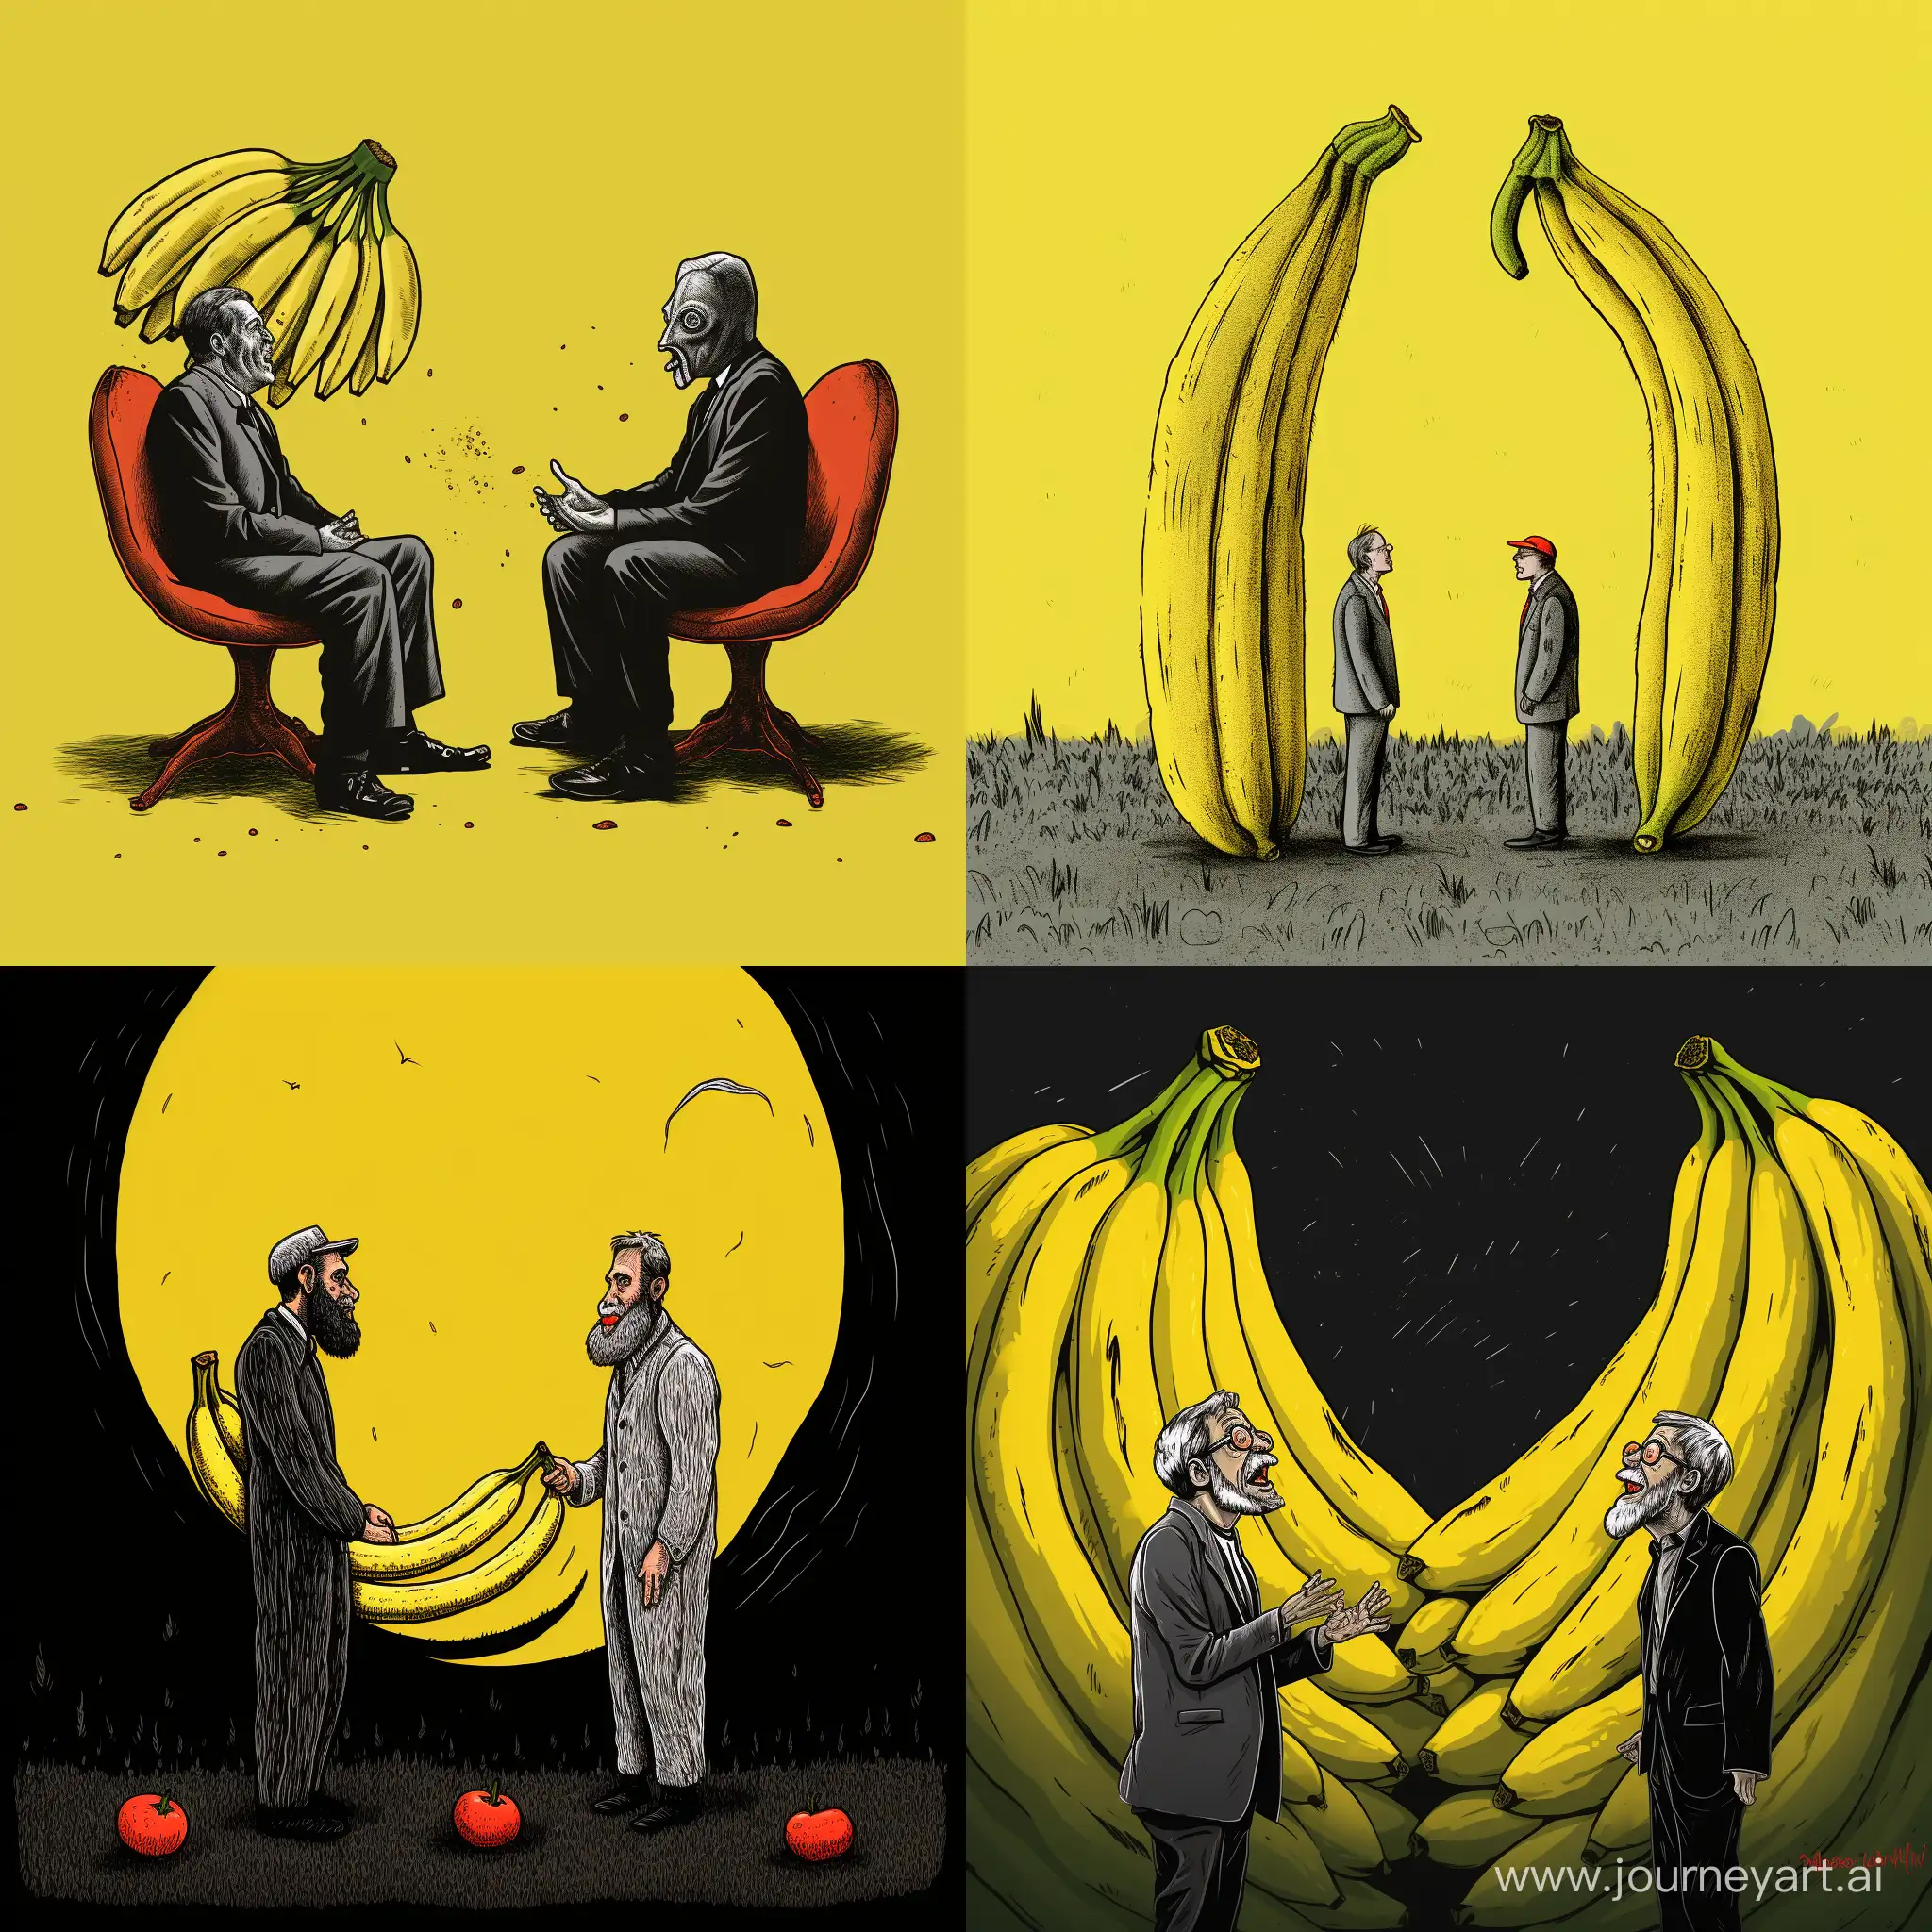 Иллюстрация, 2 банана спорят о смысле жизни